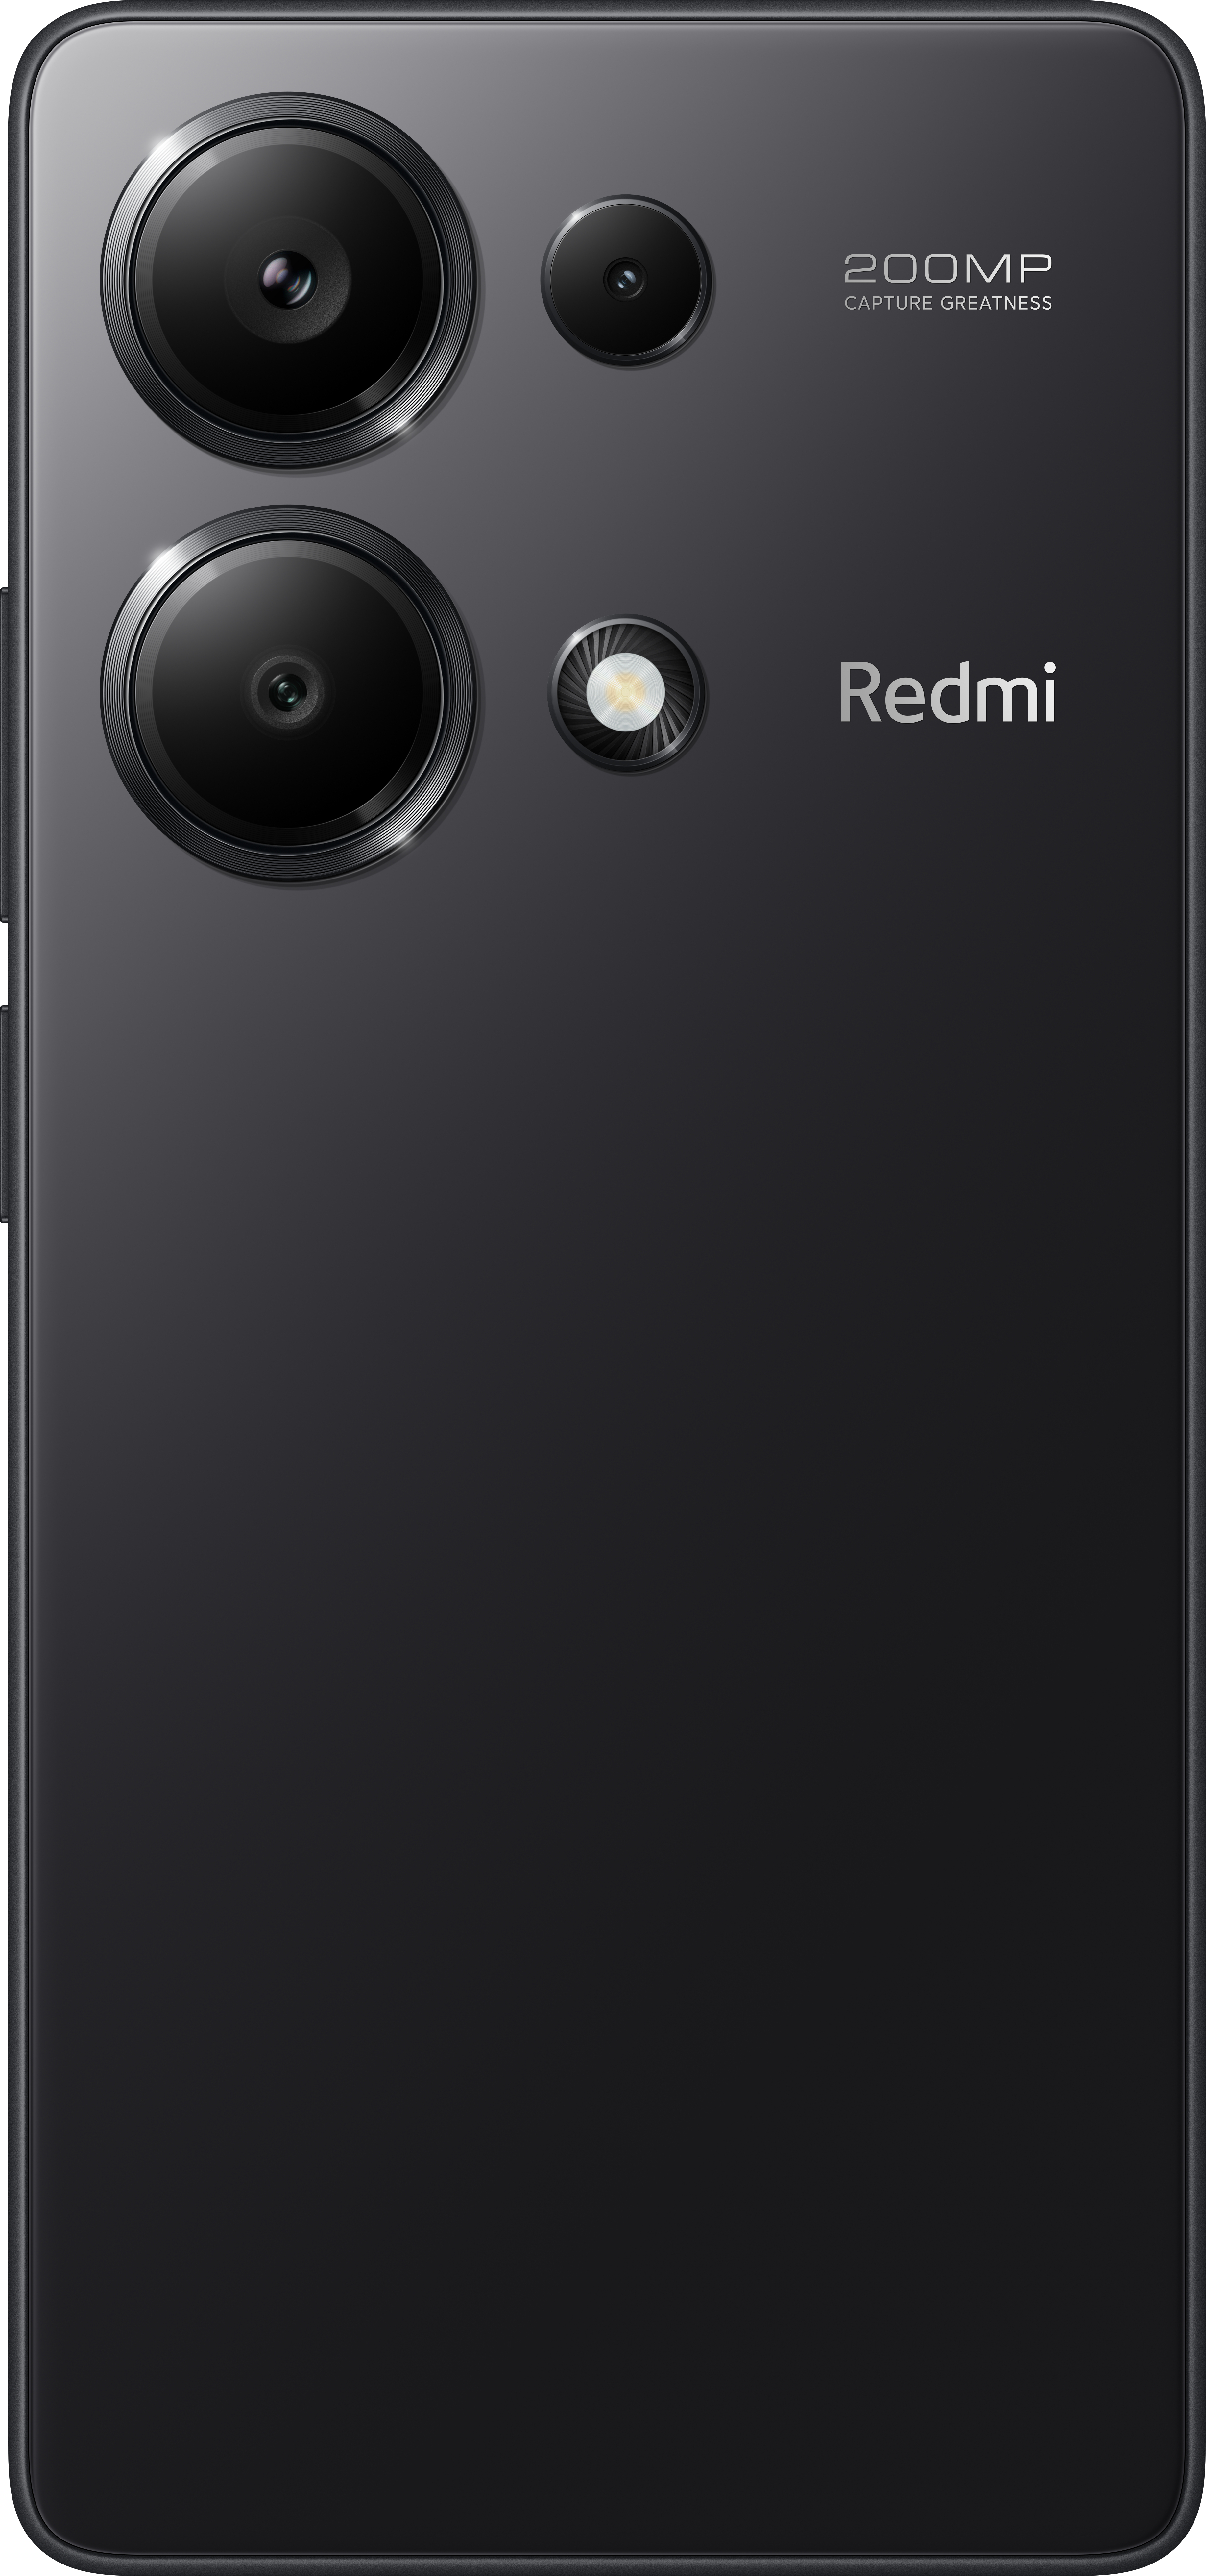 Midnight 256 13 Note Pro Black Dual Redmi GB XIAOMI SIM